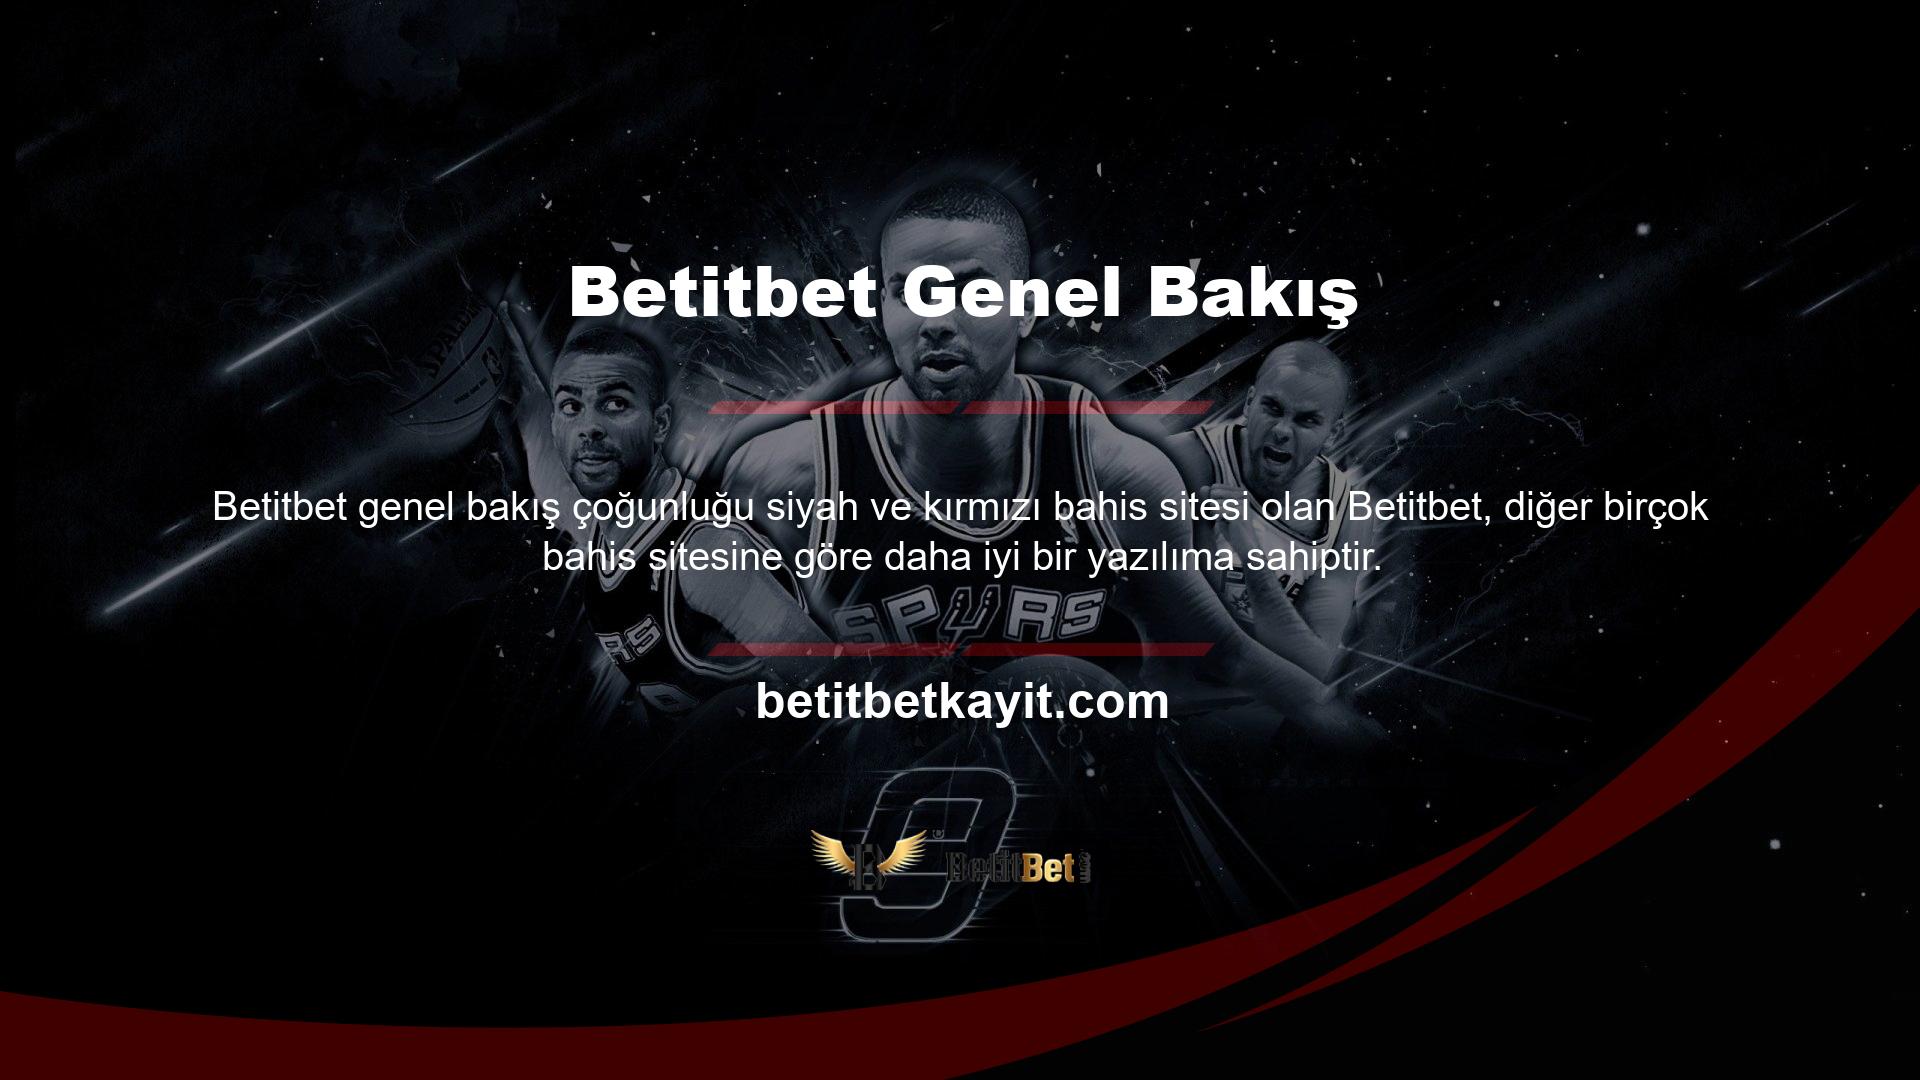 Kullanıcı dostu ve güvenli bir bahis sitesi olan Betitbet ile ilgili tüm bilgilere web sitemizden ulaşabilirsiniz